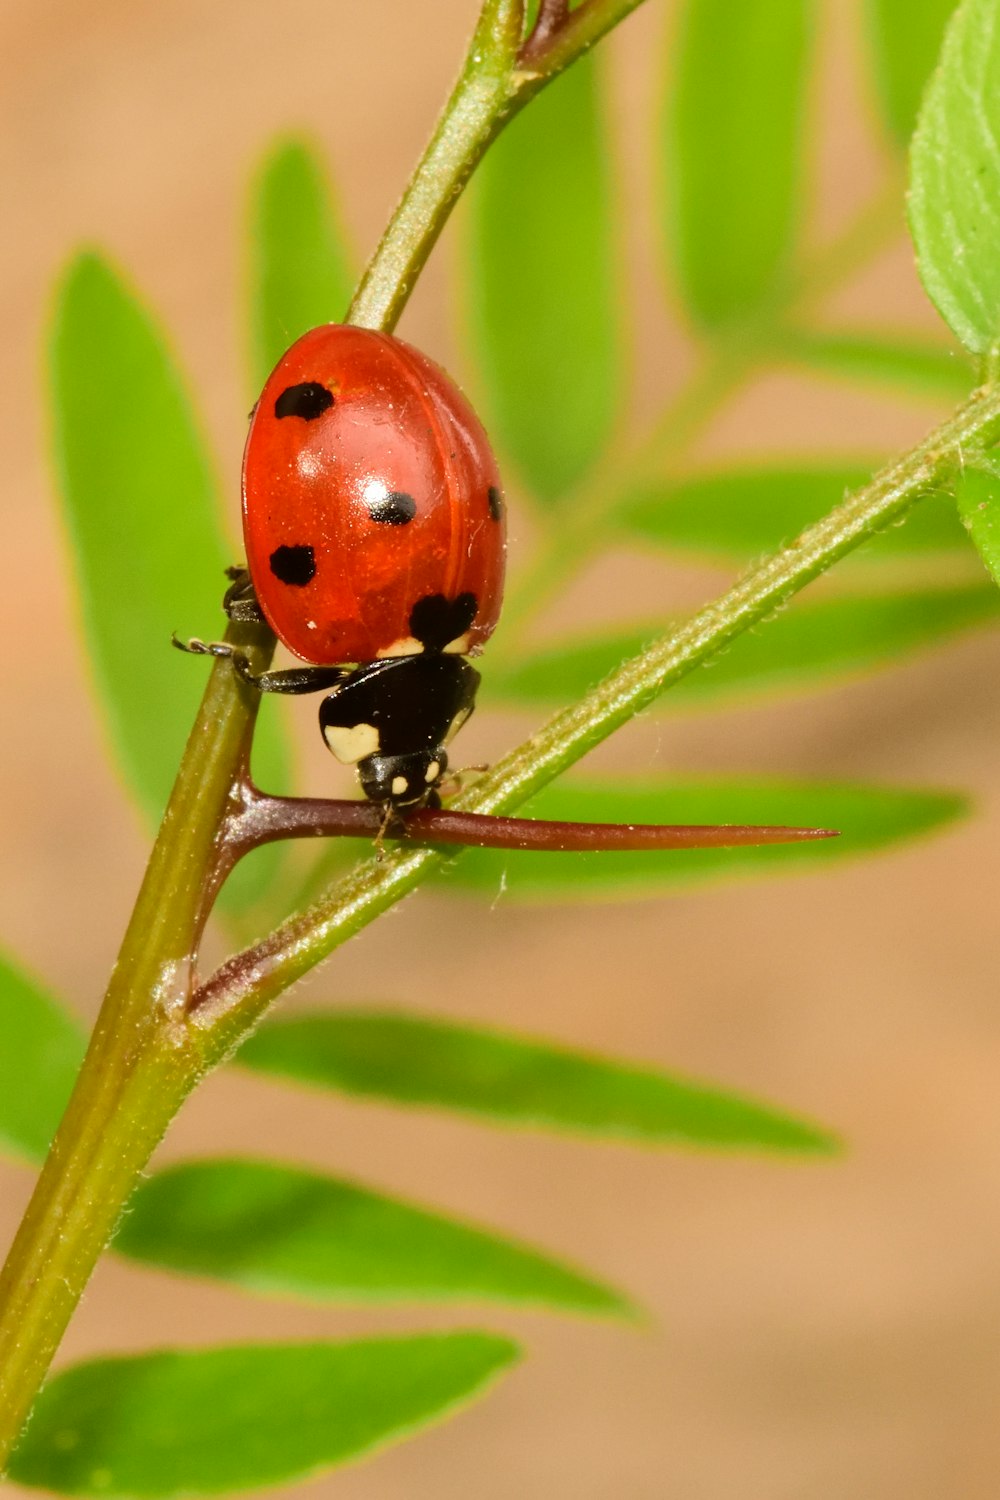 Roter Marienkäfer sitzt tagsüber auf grünem Blatt in Nahaufnahmen